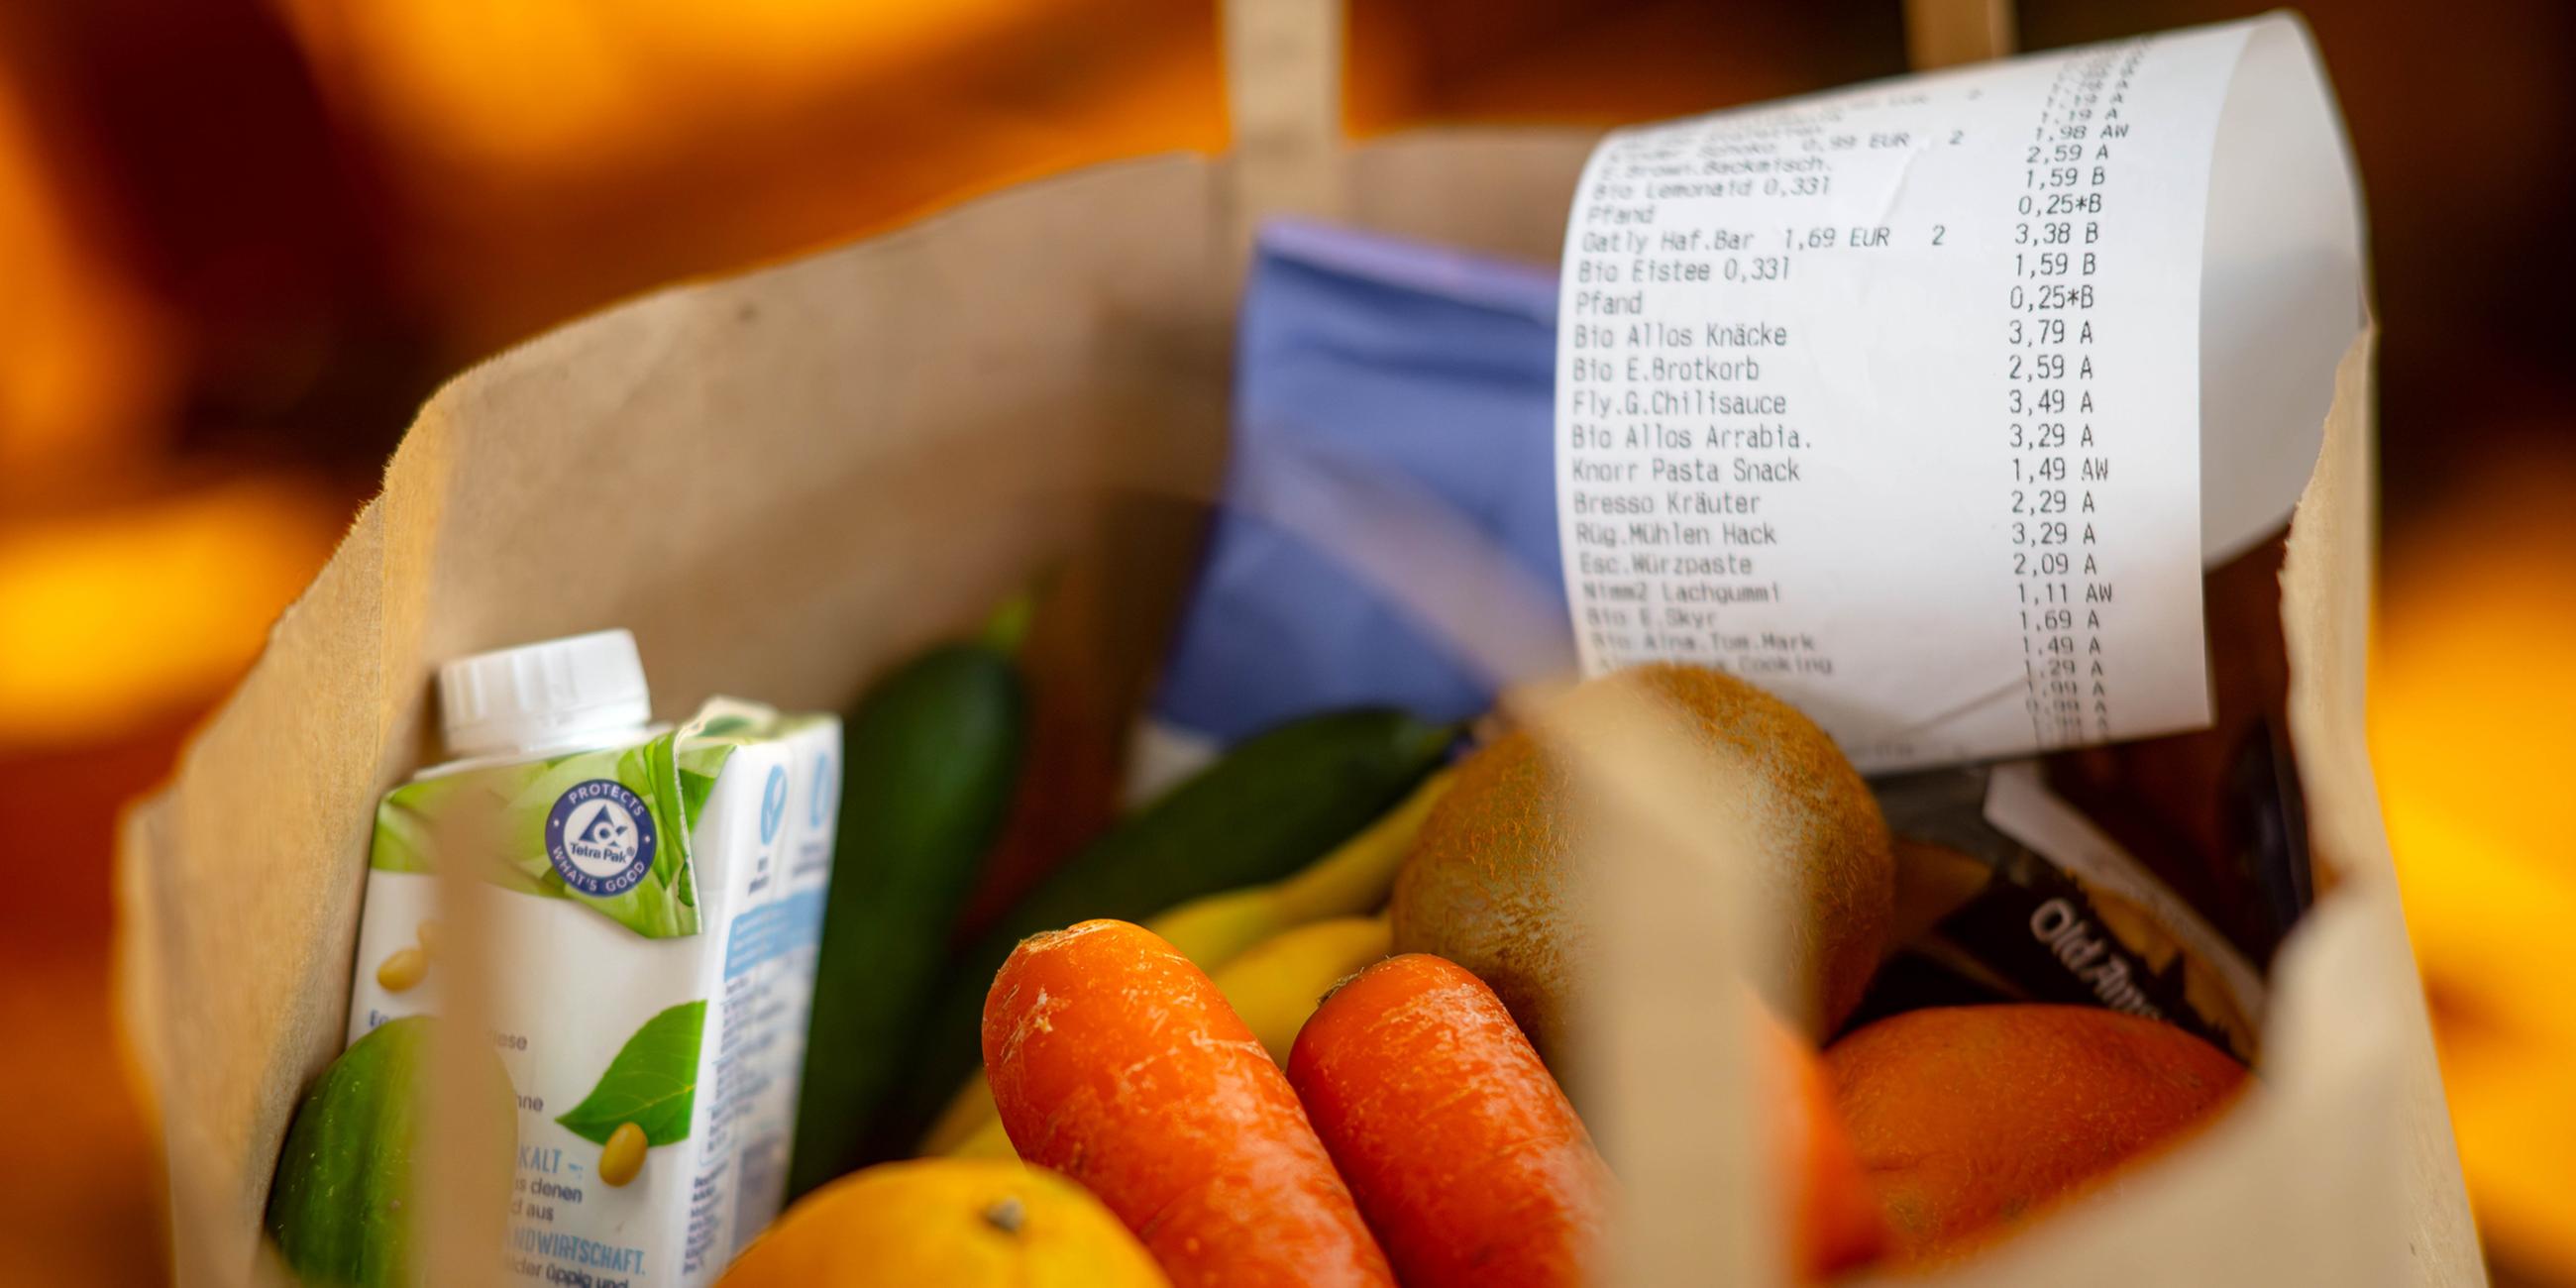 Ein Kassenbon liegt auf den Lebensmitteln in einer Einkaufstüte.